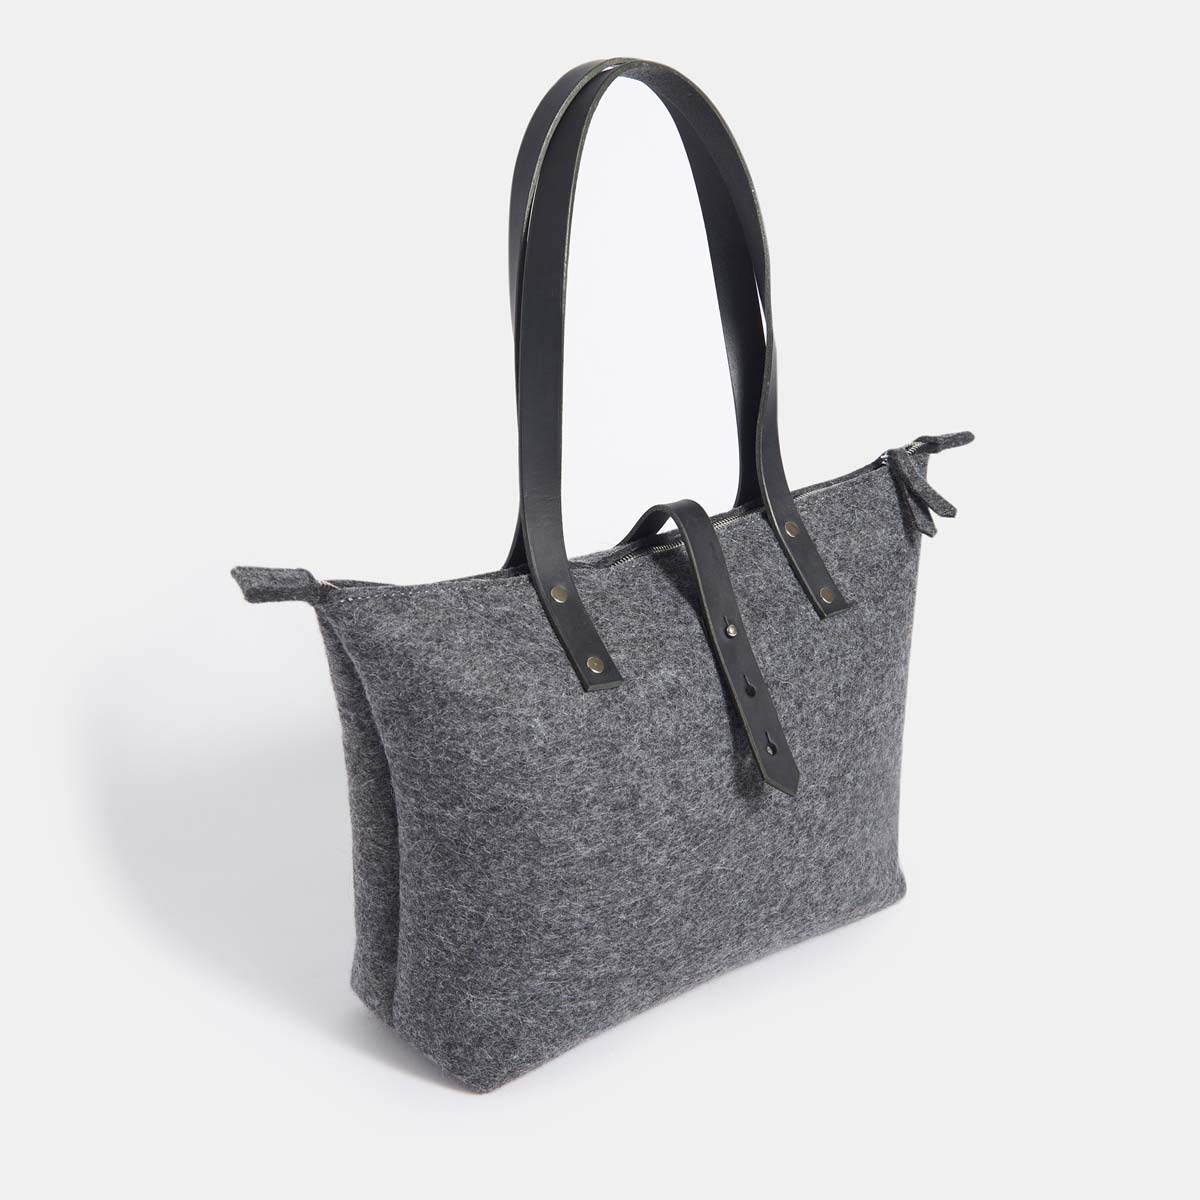 Wool Felt Tote Bag with Zip - Grey - RYAN London